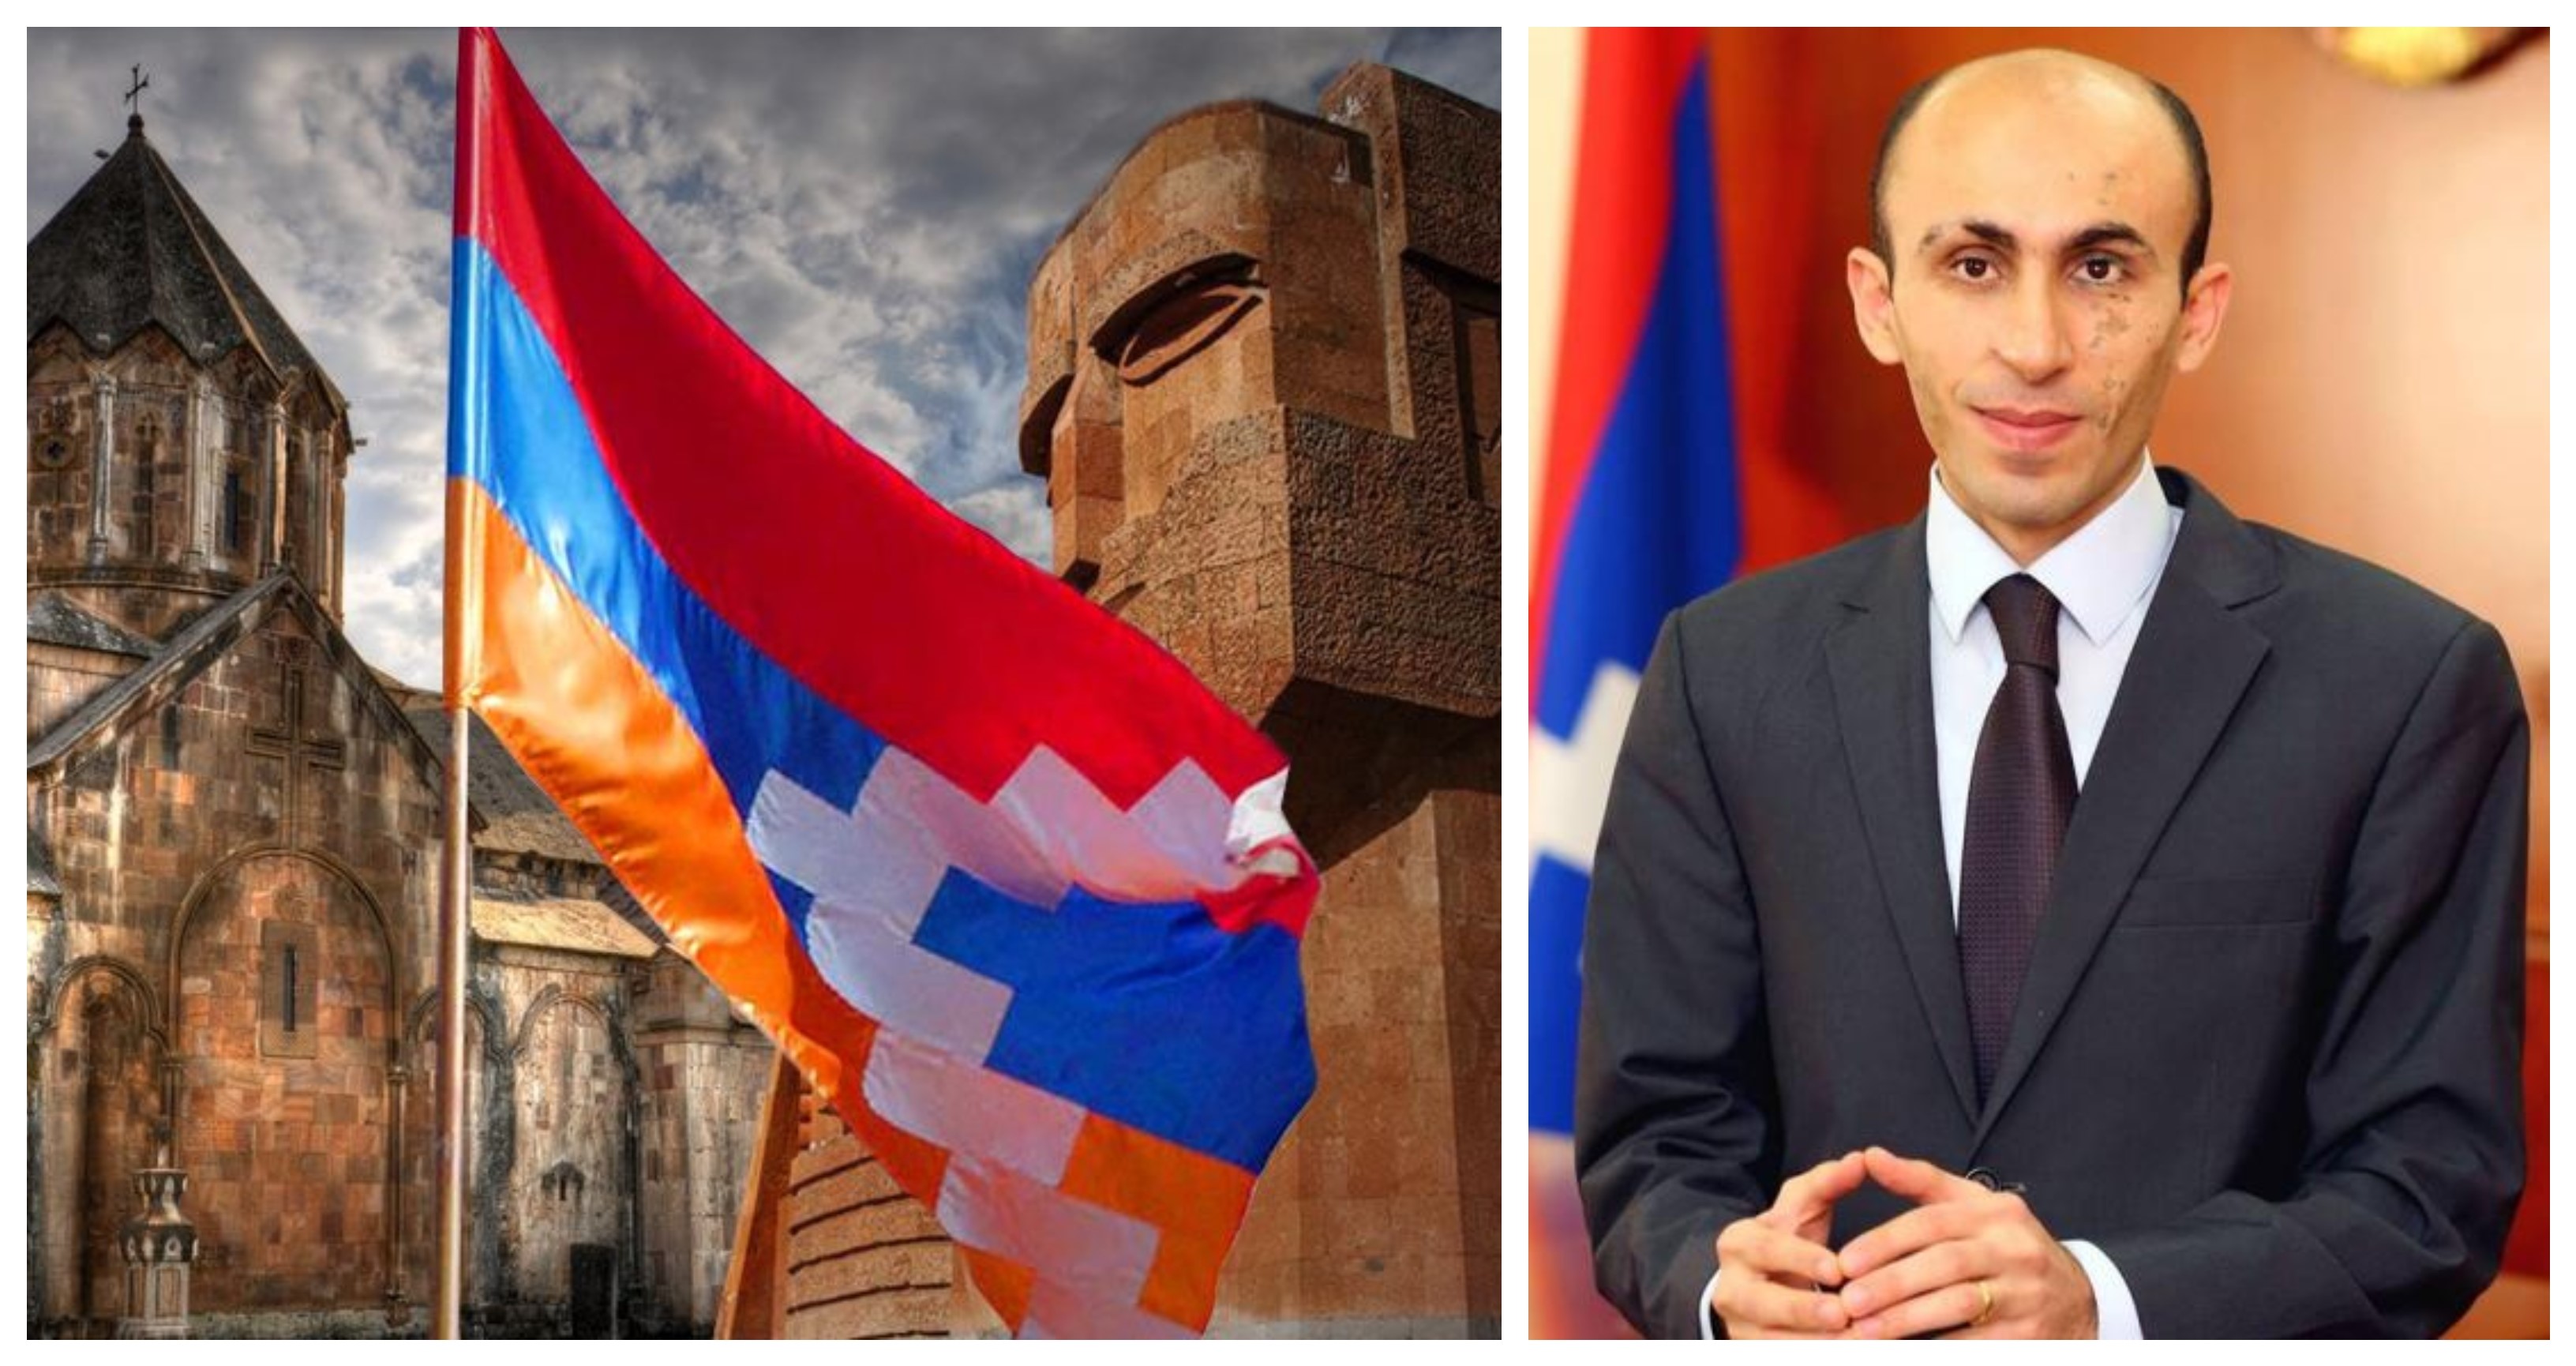 Ադրբեջանցիները կմասնակցեն Արցախի ընտրություններին, եթե ստանան մեր քաղաքացիությունը. ՄԻՊ